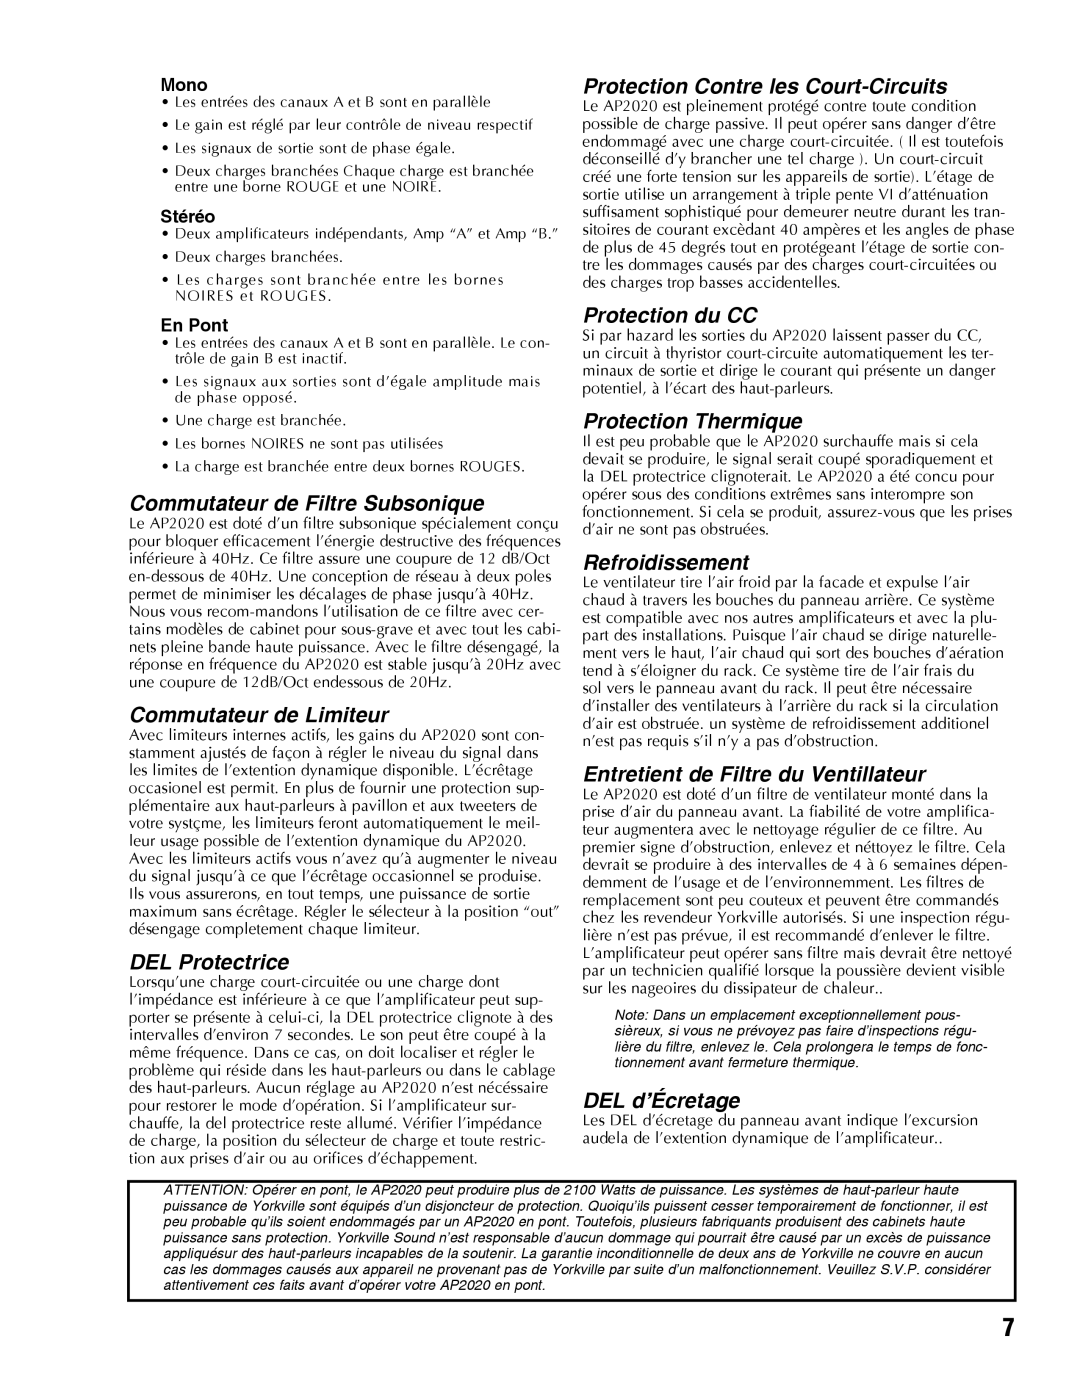 Yorkville Sound AP2020 manual Commutateur de Filtre Subsonique, Commutateur de Limiteur, DEL Protectrice, Protection du CC 